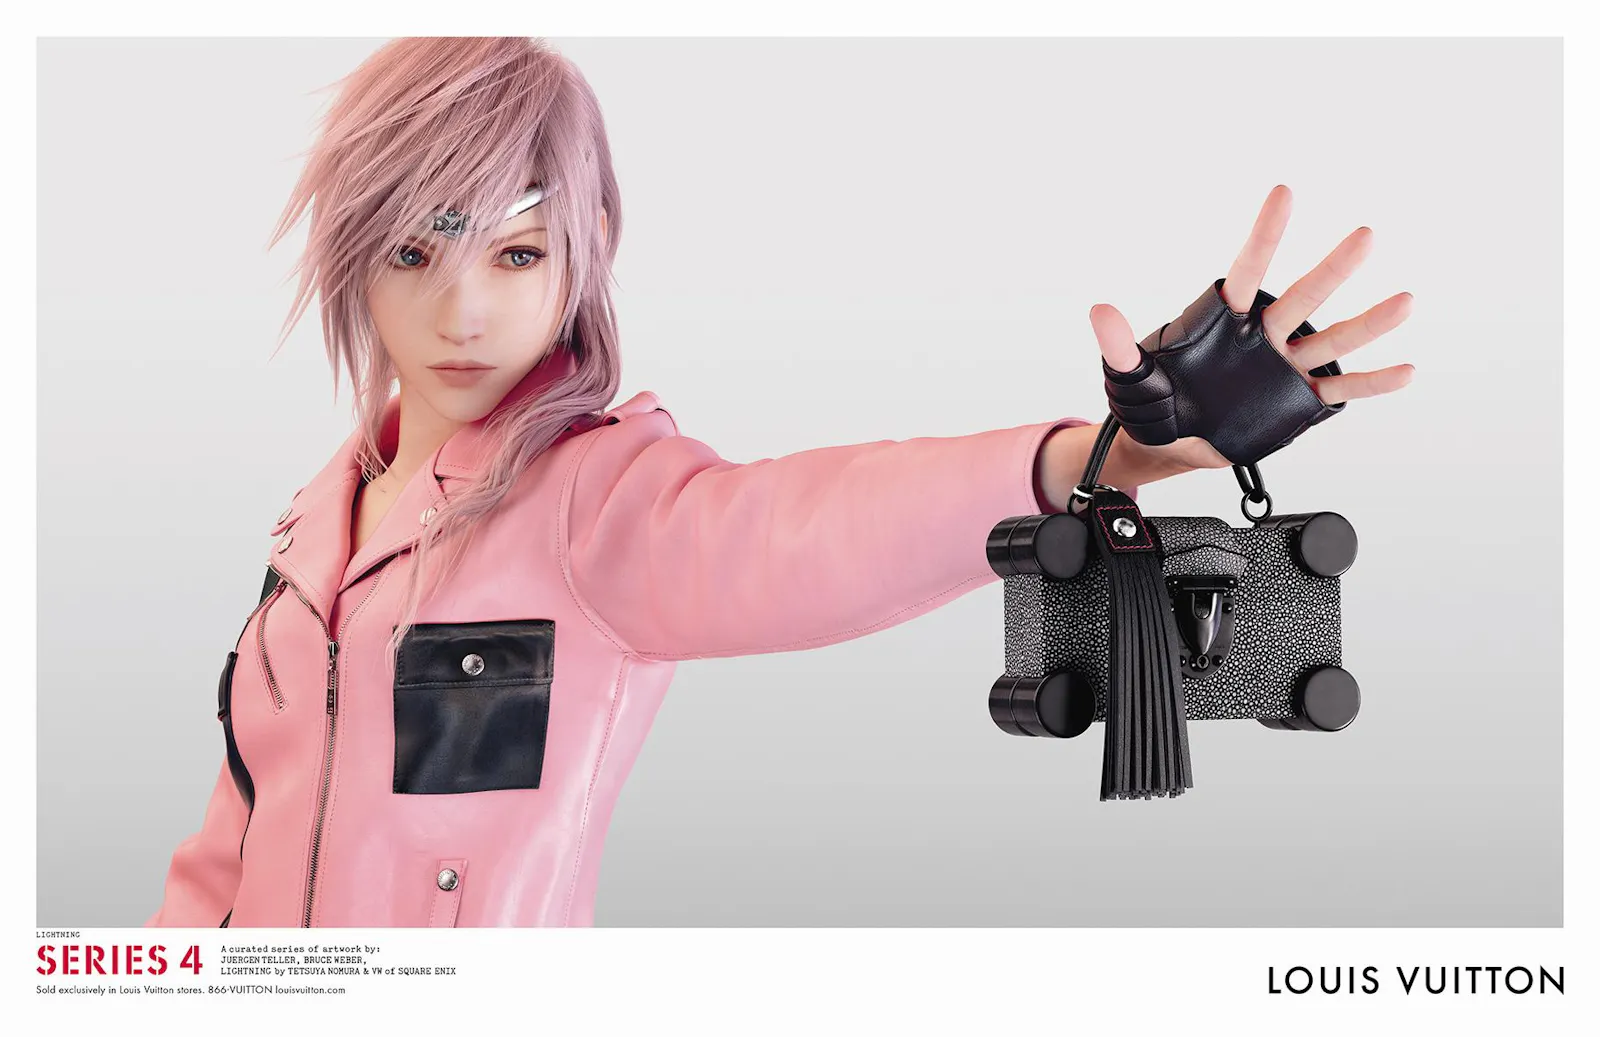 Lightning aus Final Fantasy 13 als Model für Louis Vuitton. Sie trägt eine rosa Jacke und zeigt eine schwarze kleine Handtasche in die Kamera.